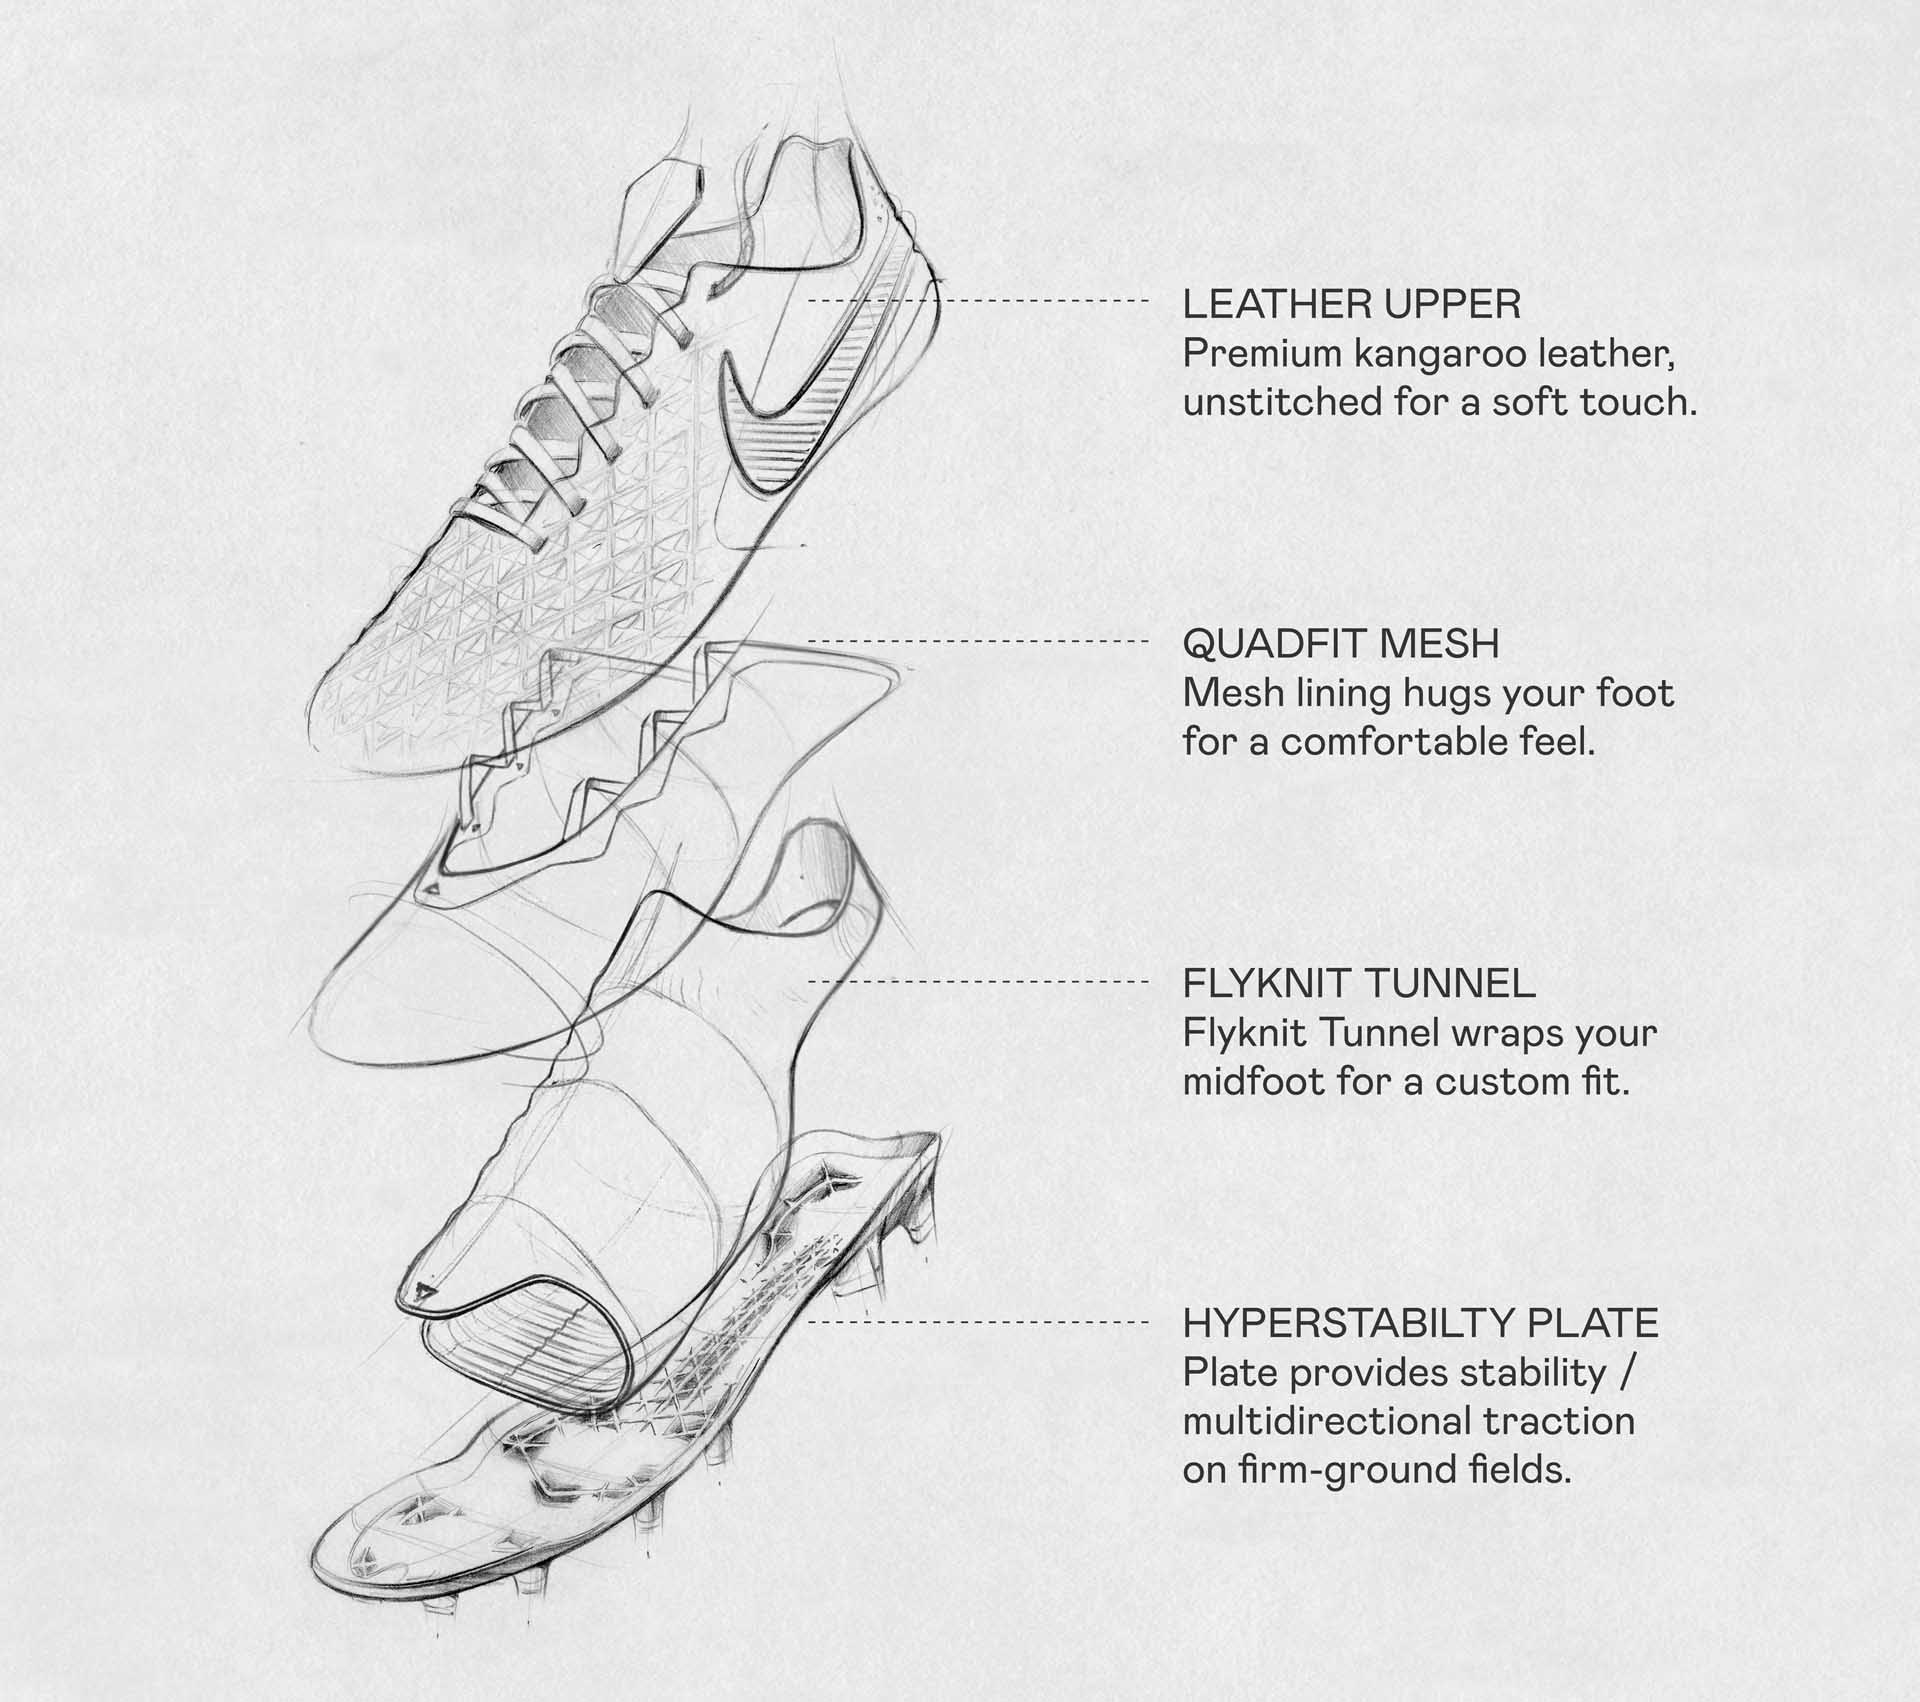 Sự khác biệt và các công nghệ sản xuất phức tạp có trên giày đá bóng Top-End